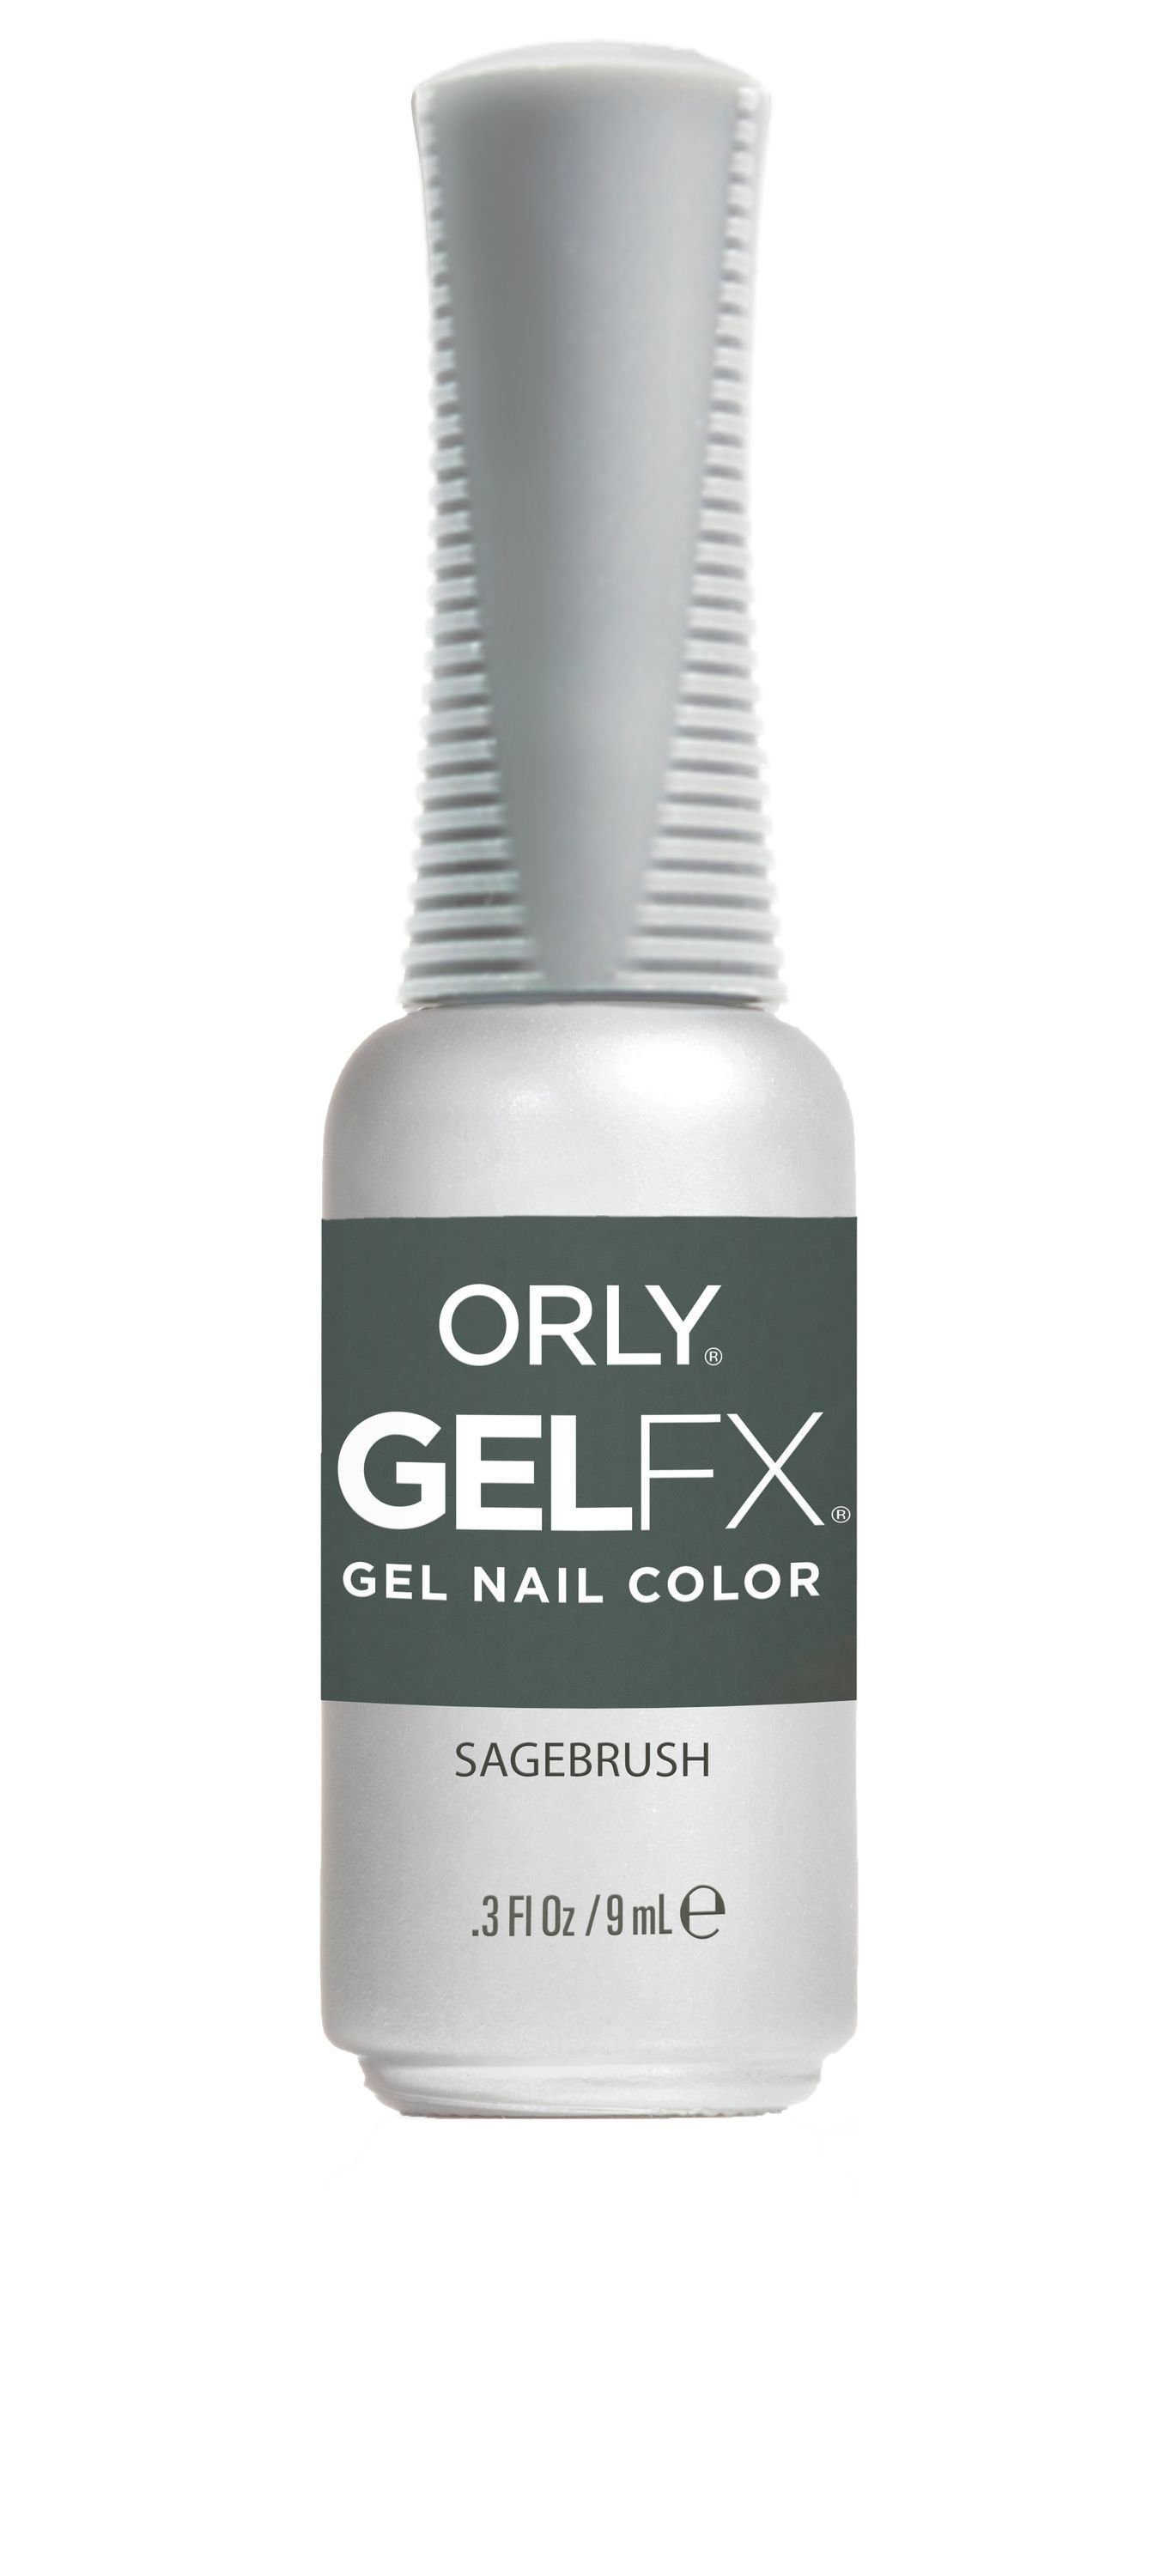 ORLY UV-Nagellack Gel FX Sagebrush, 9ML